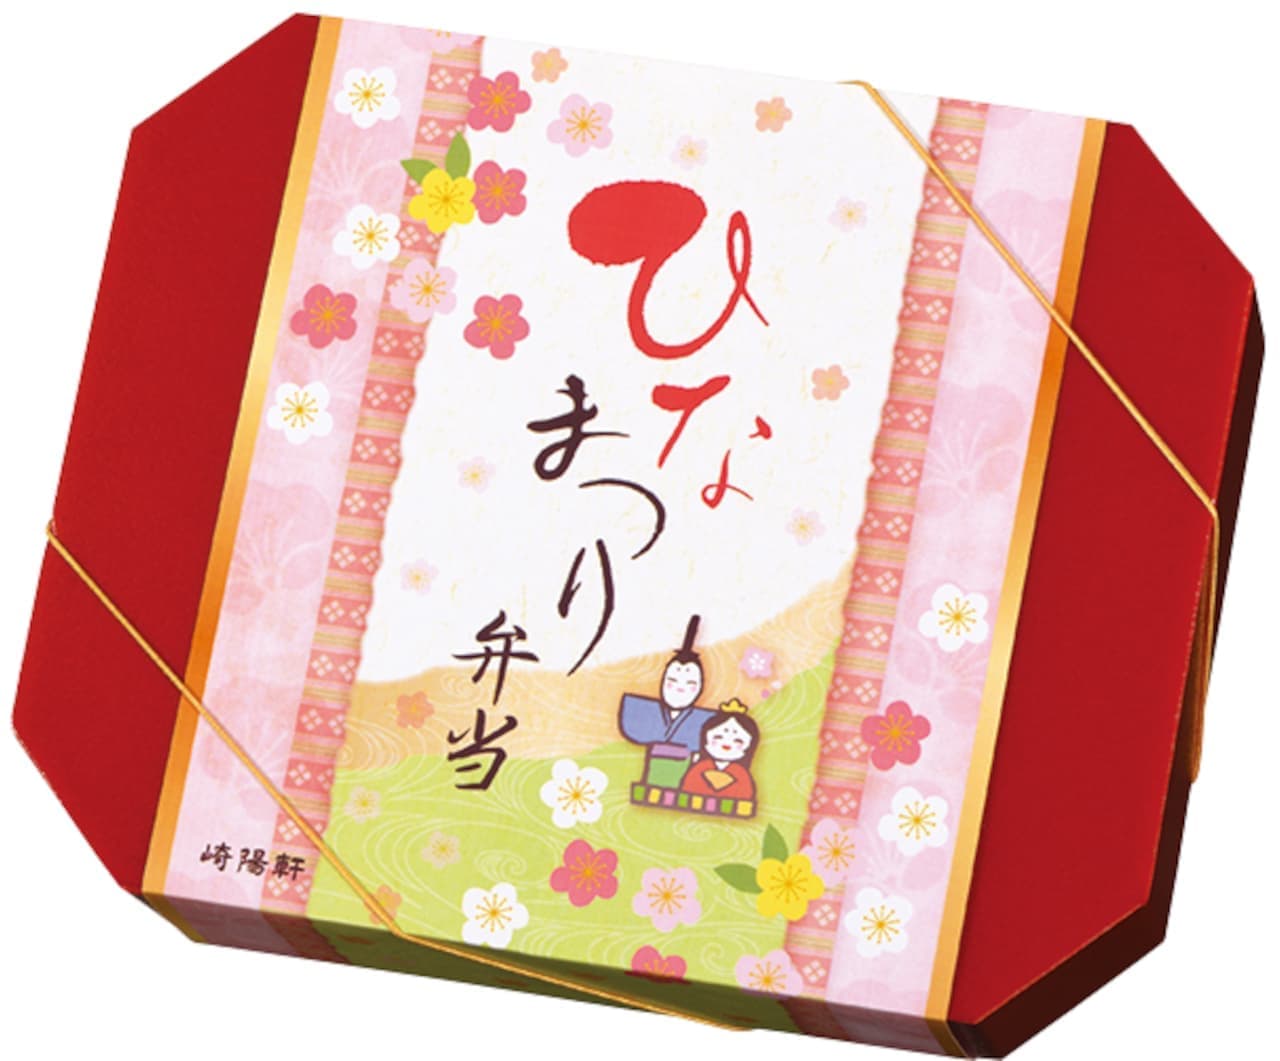 Sakiyo-ken "Hinamatsuri bento" package